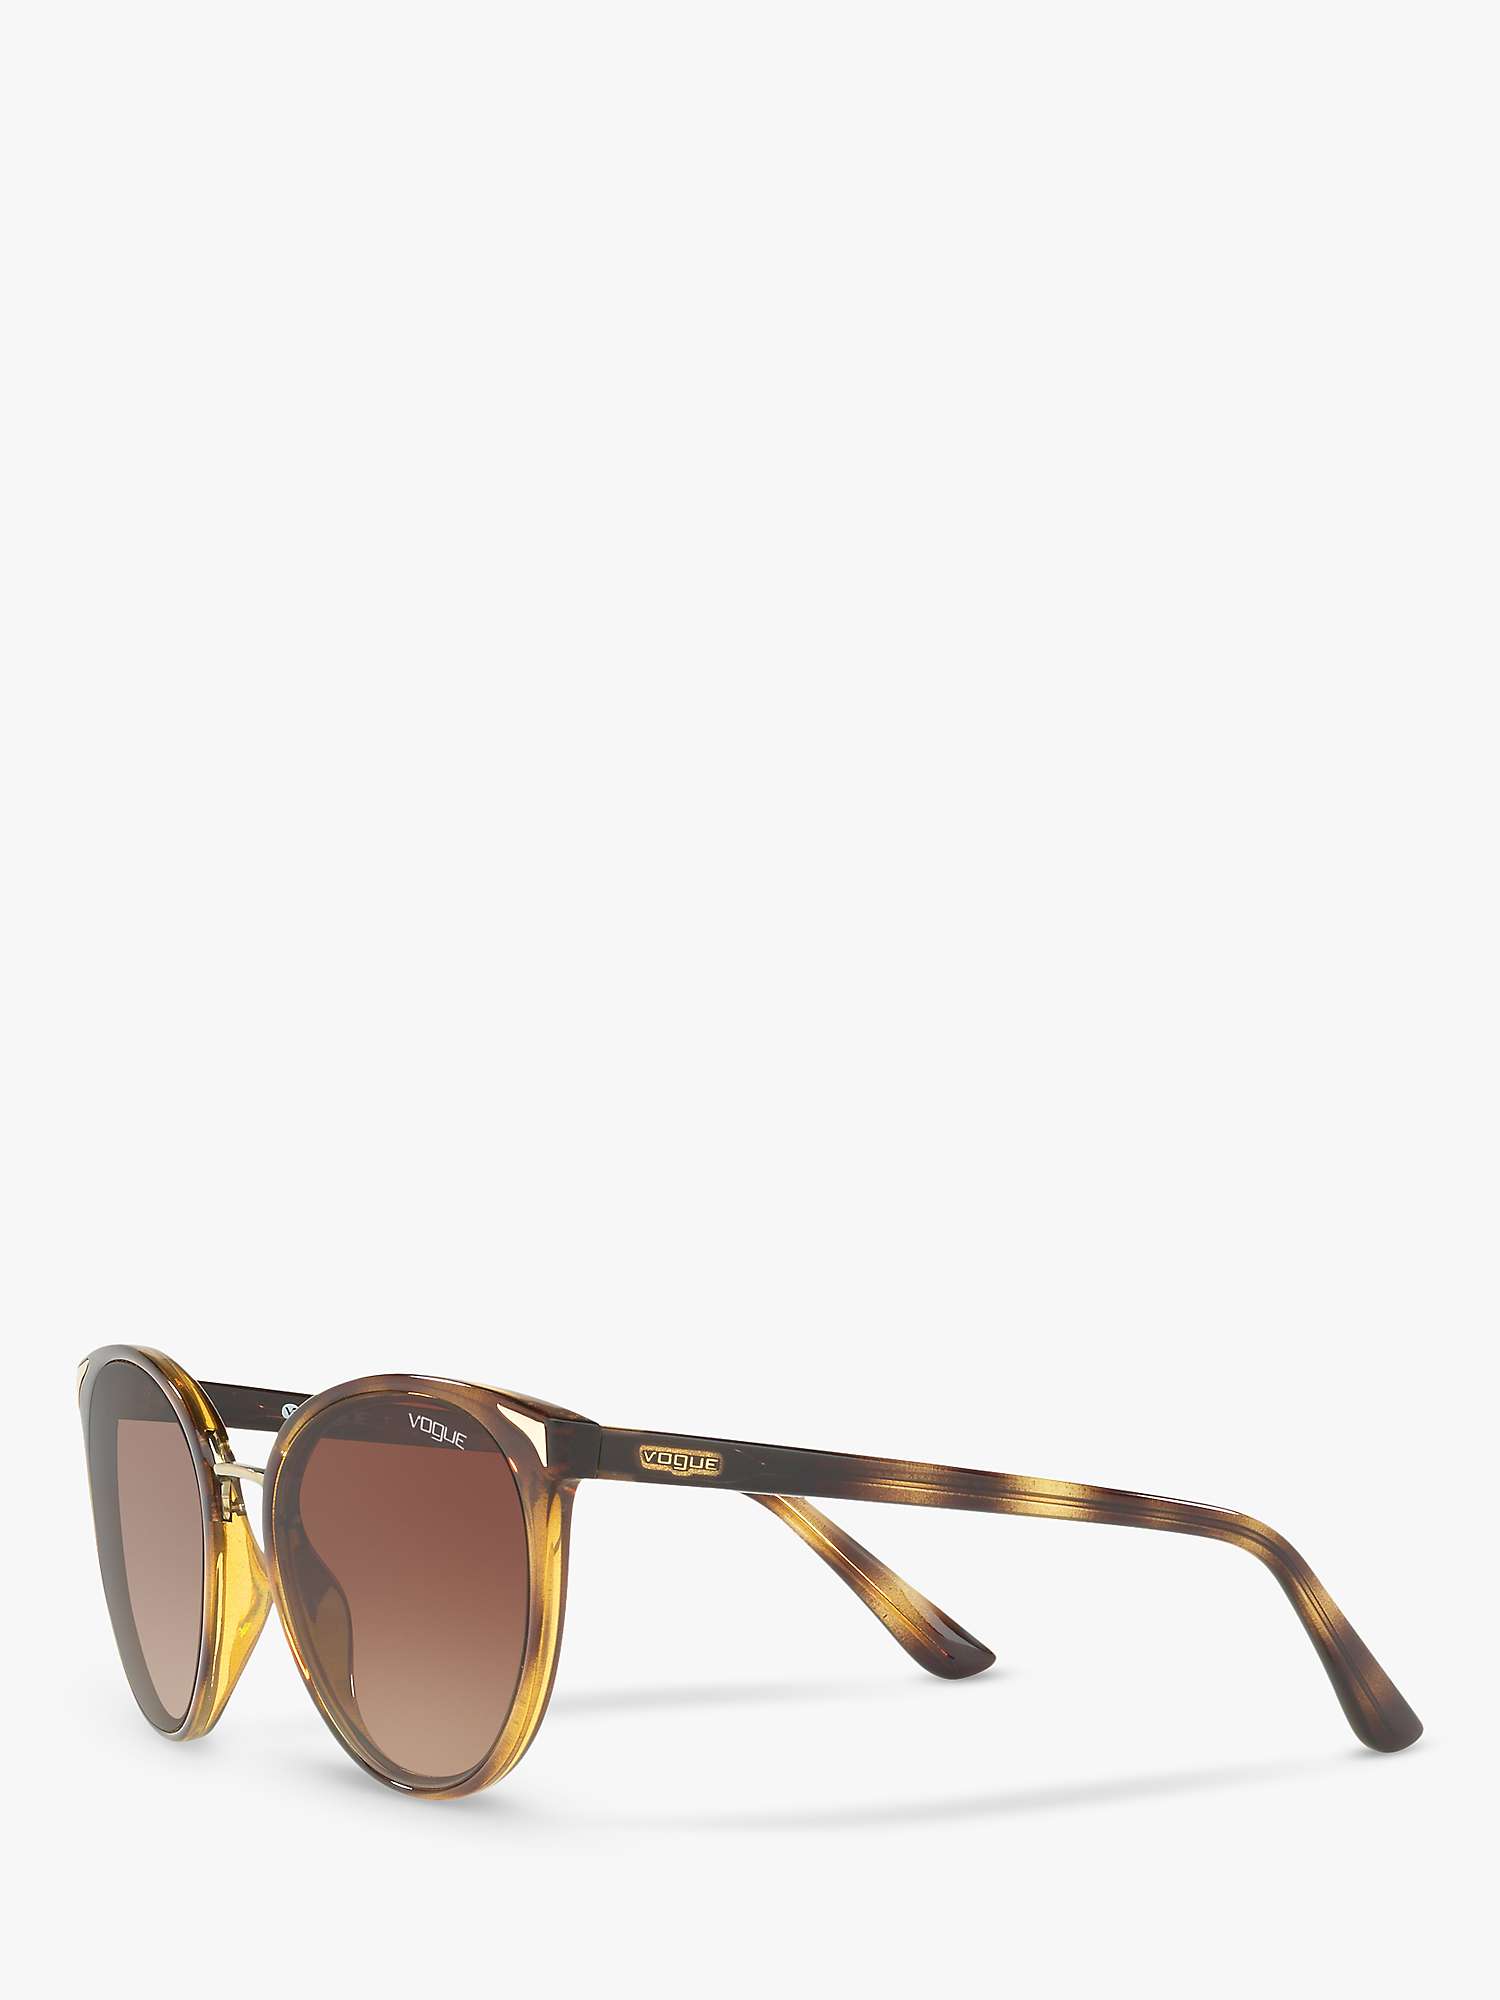 Buy Vogue VO5230S Women's Butterfly Sunglasses, Havana/Brown Gradient Online at johnlewis.com